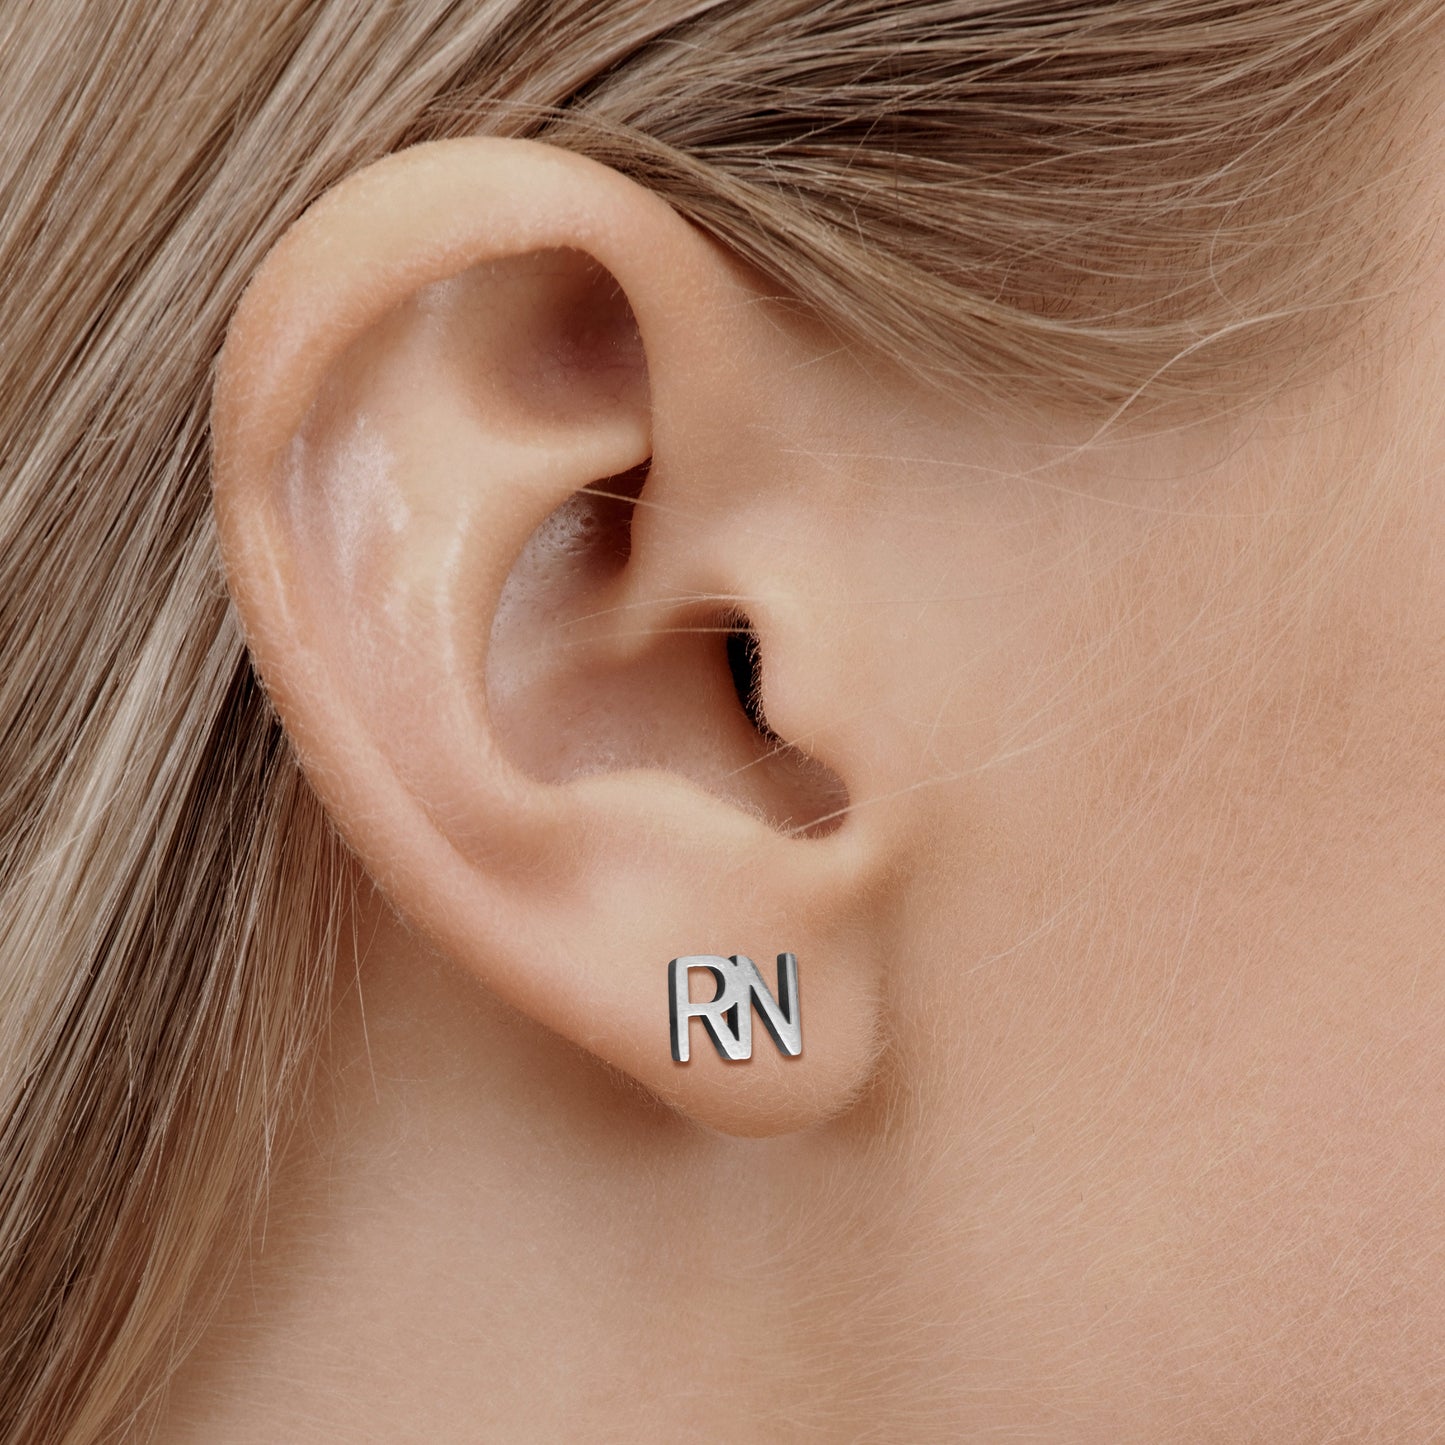 RN Earrings for nurses in silver